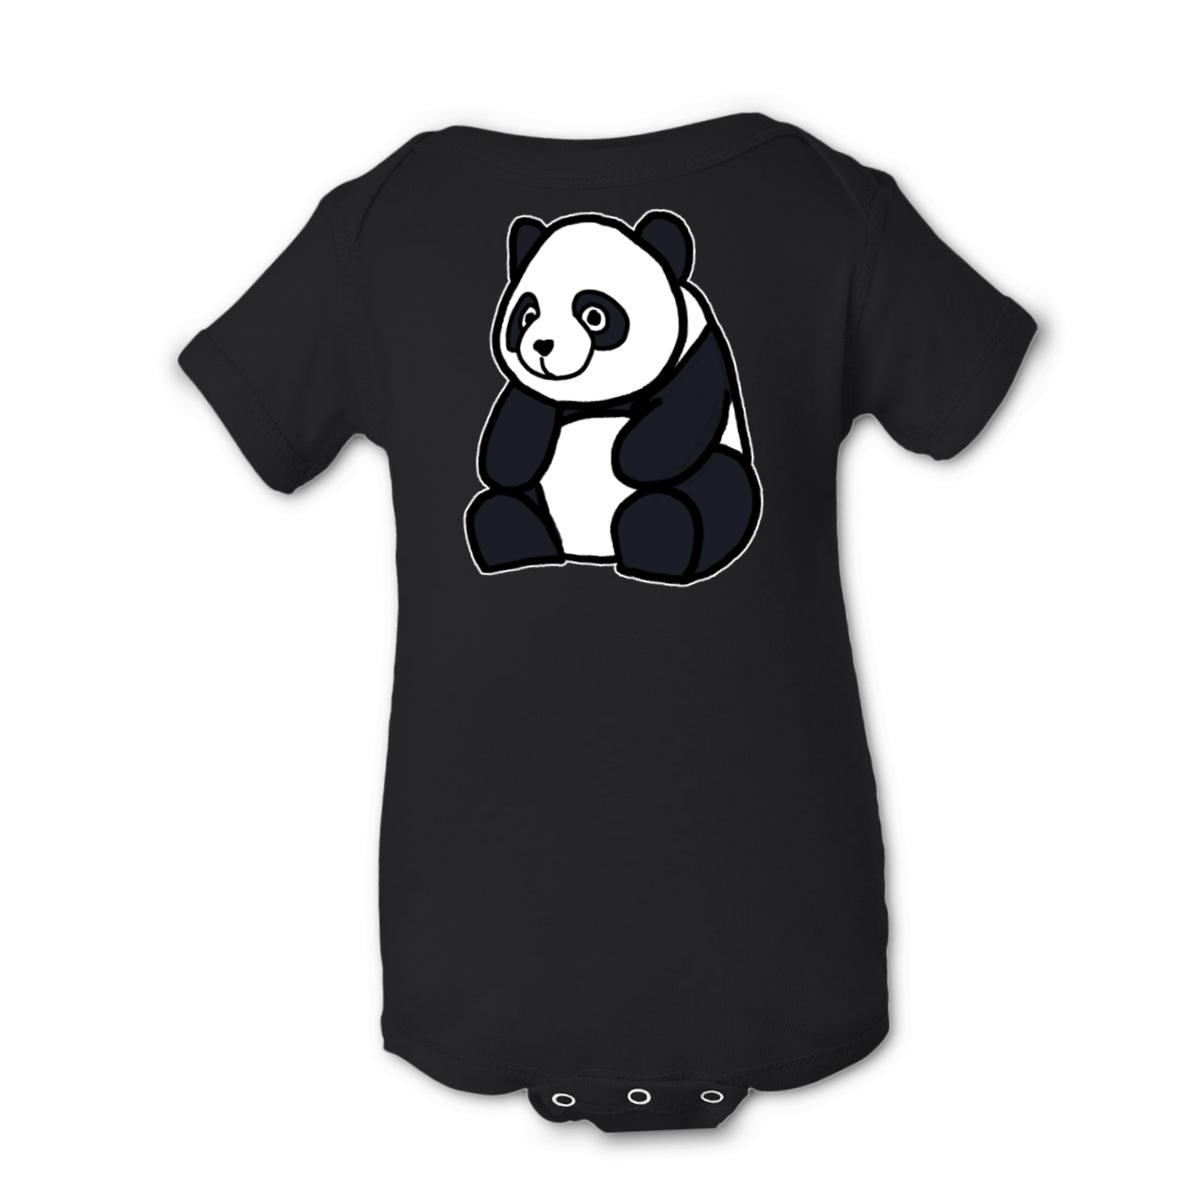 Panda Onesie 6M black